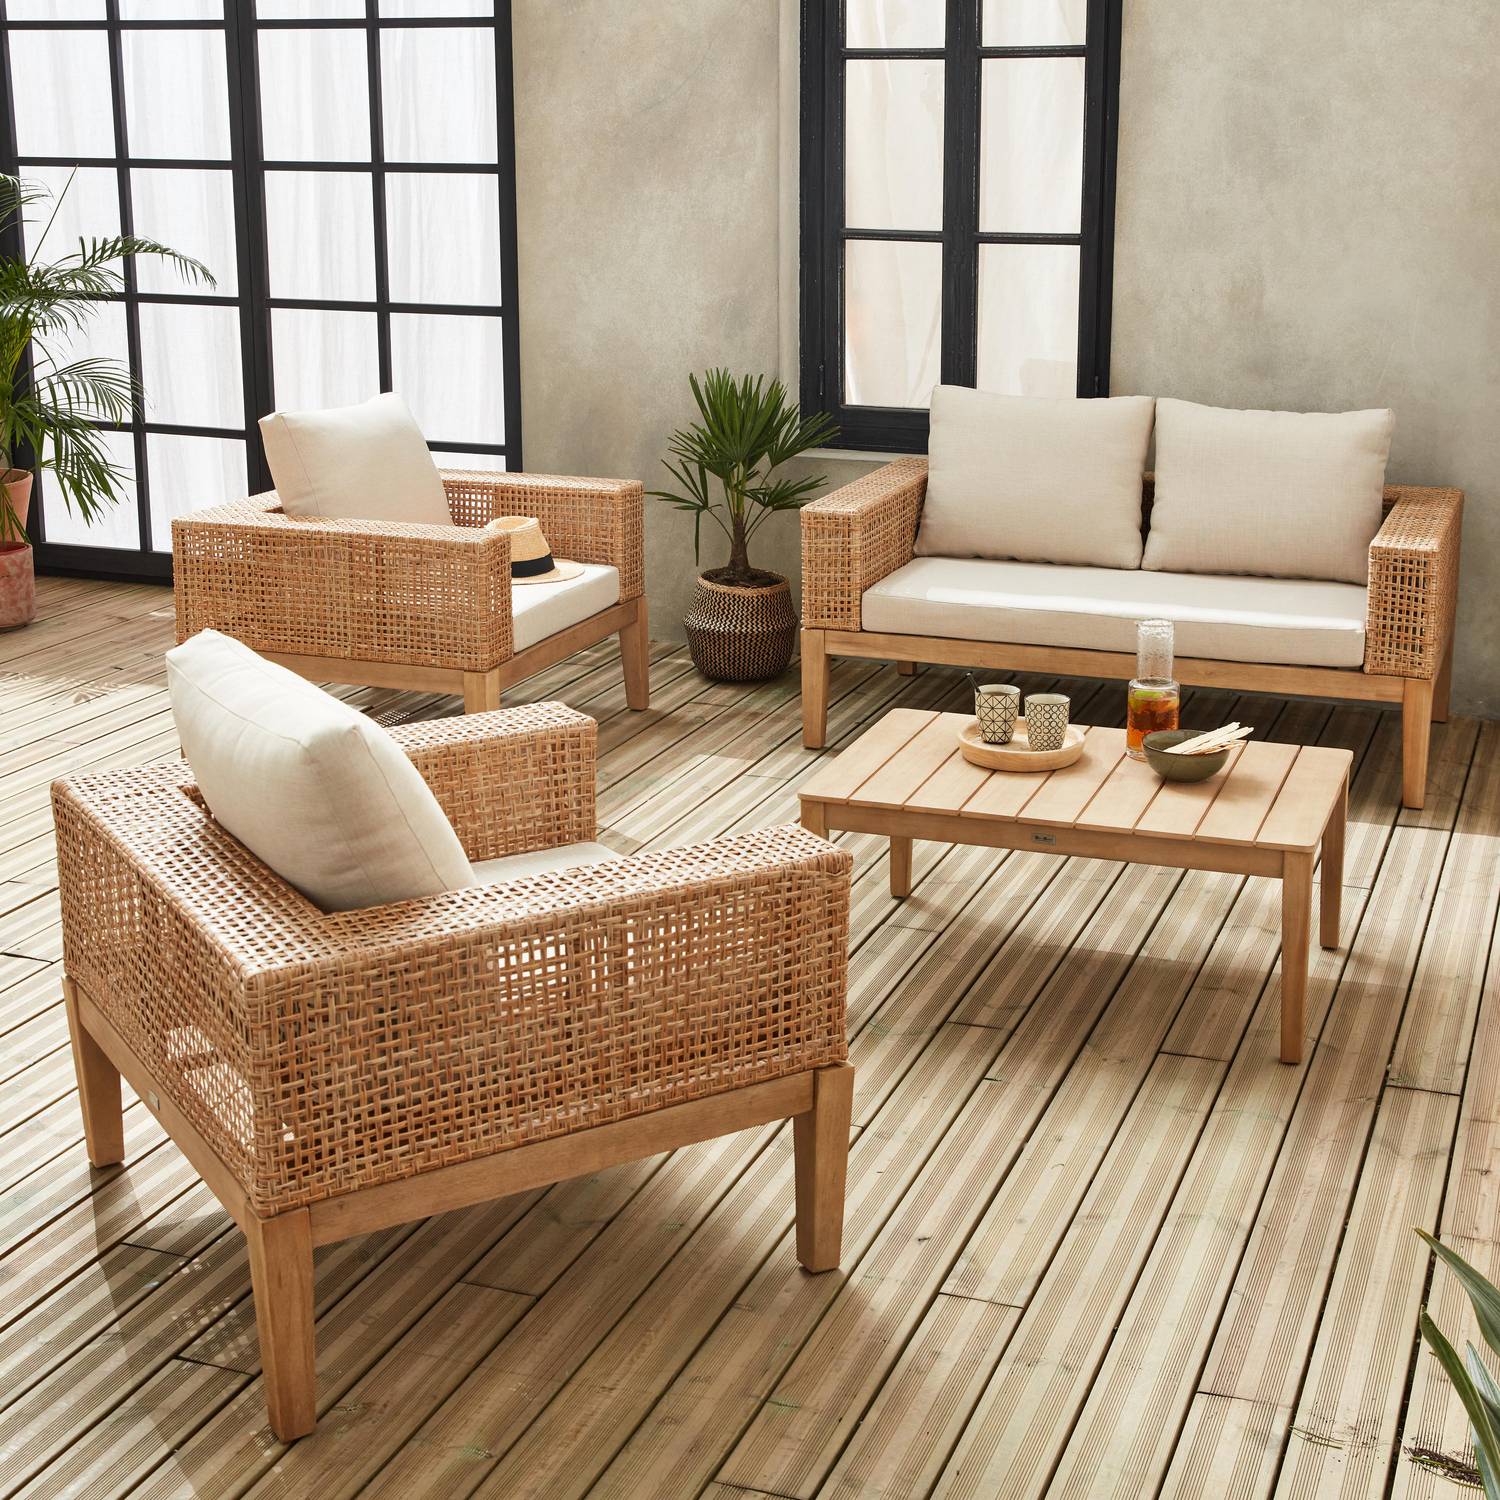 Gartenmöbel Olinda, Rohrgeflecht und Holz, 4-Sitzer, beige, FSC Akazienholz, gebürstet, gebleicht Photo2